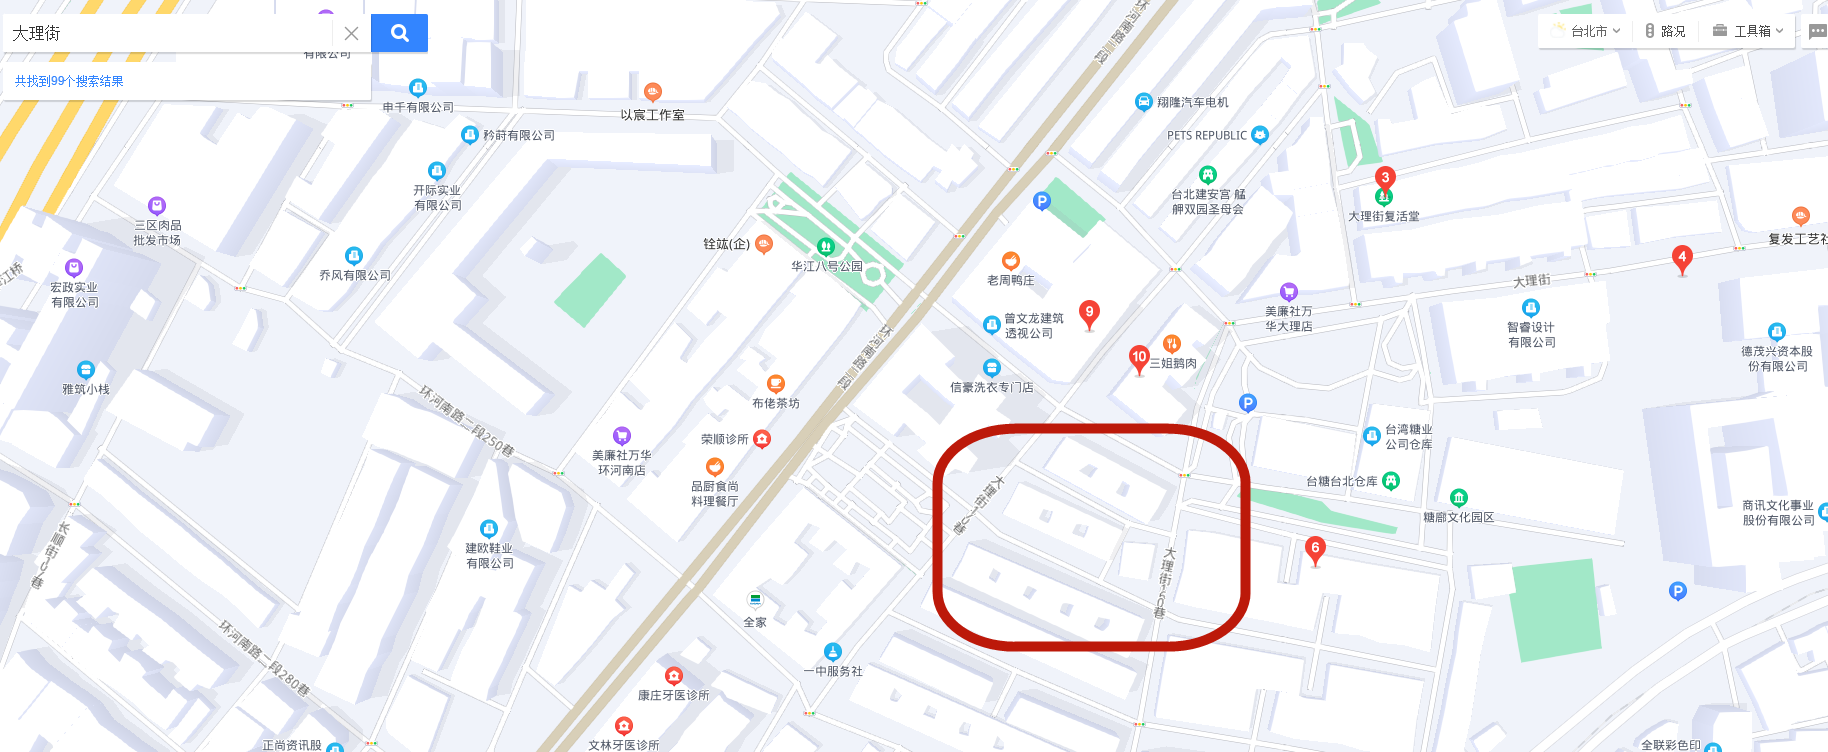 地图可显示台湾省每个街道